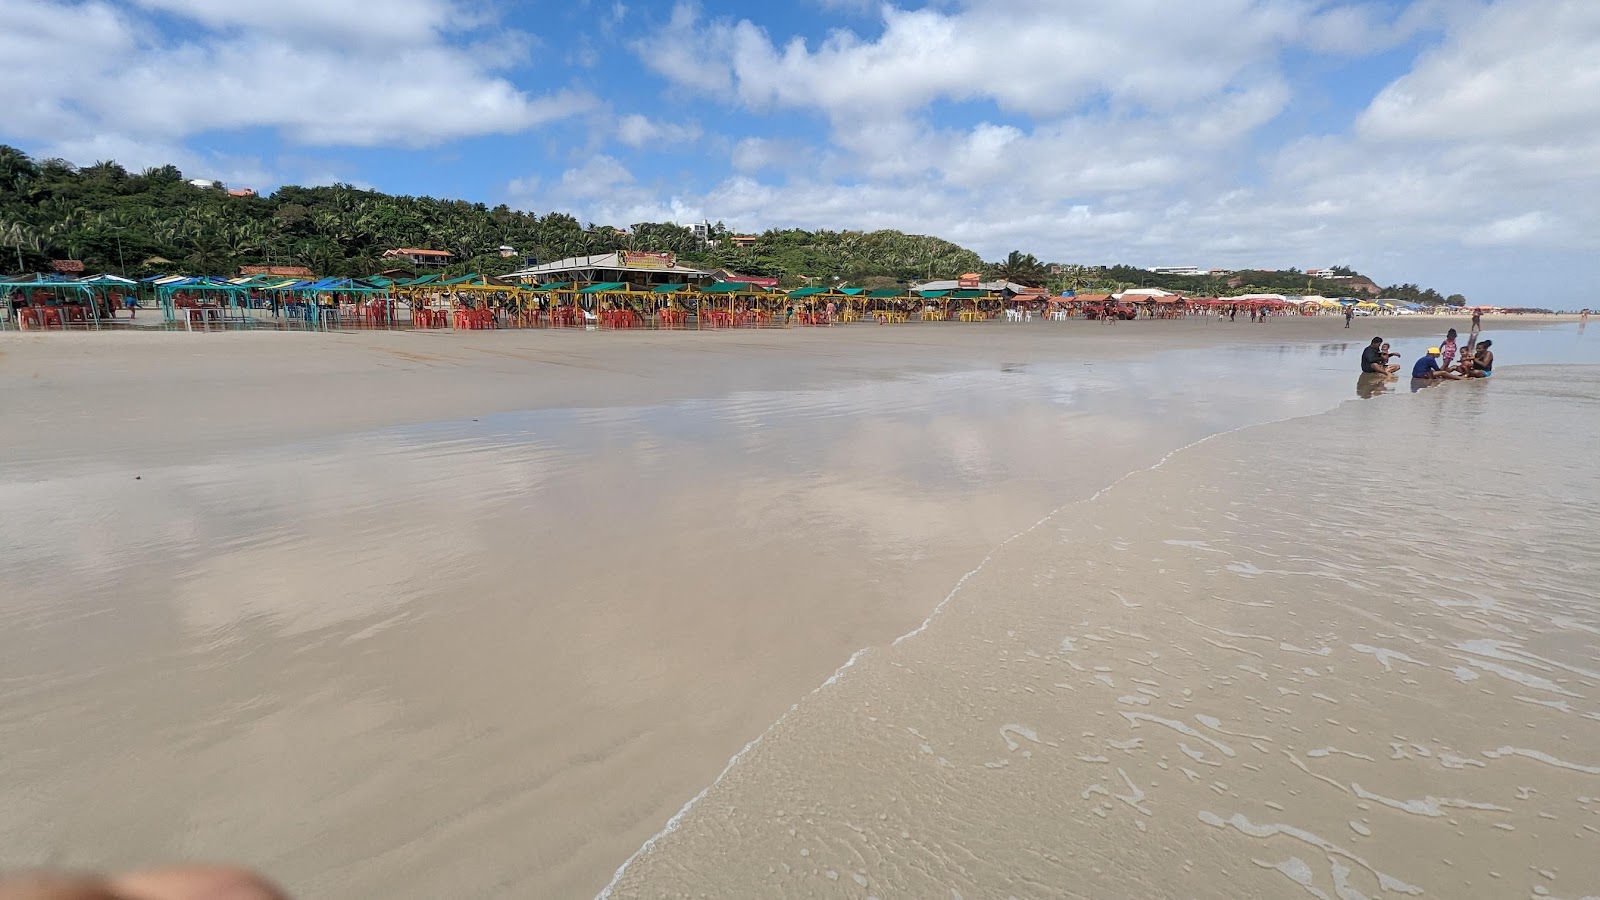 Praia do Araçagy'in fotoğrafı çok temiz temizlik seviyesi ile